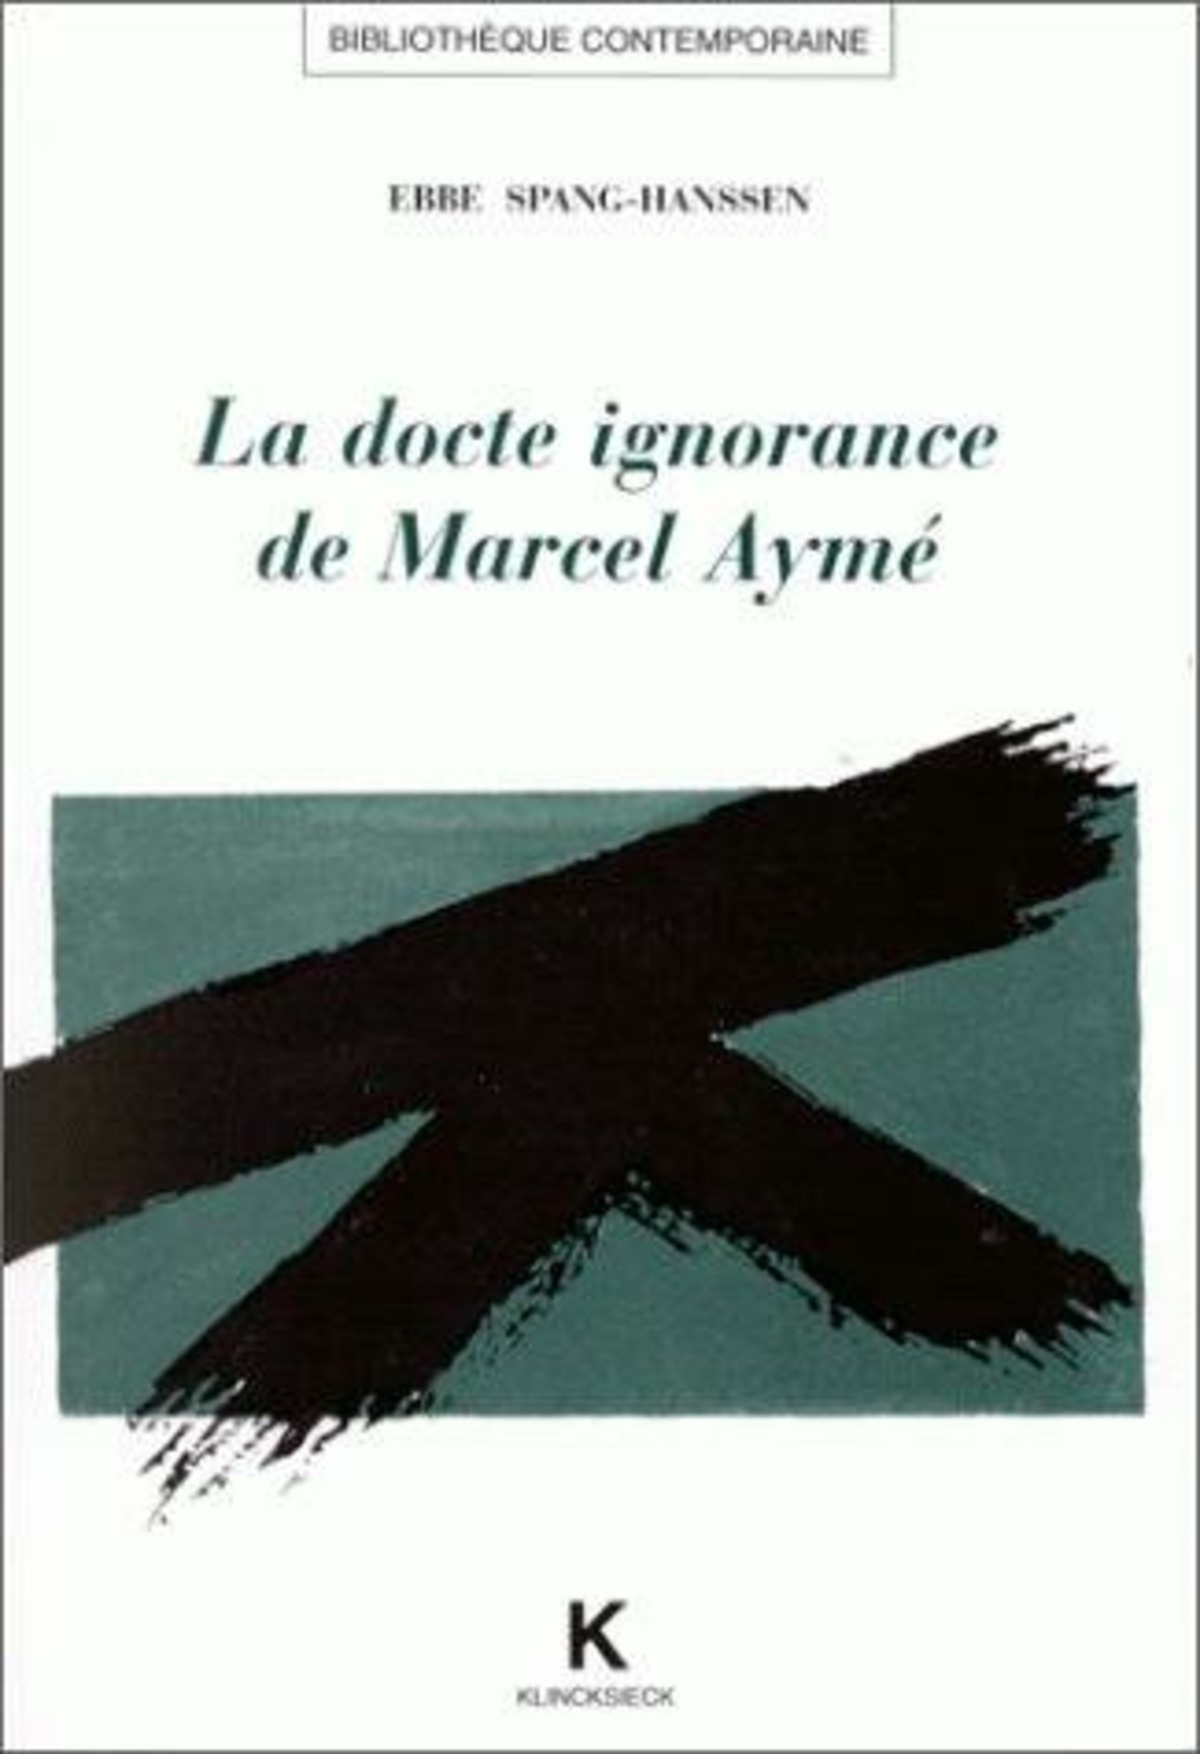 La Docte ignorance de Marcel Aymé